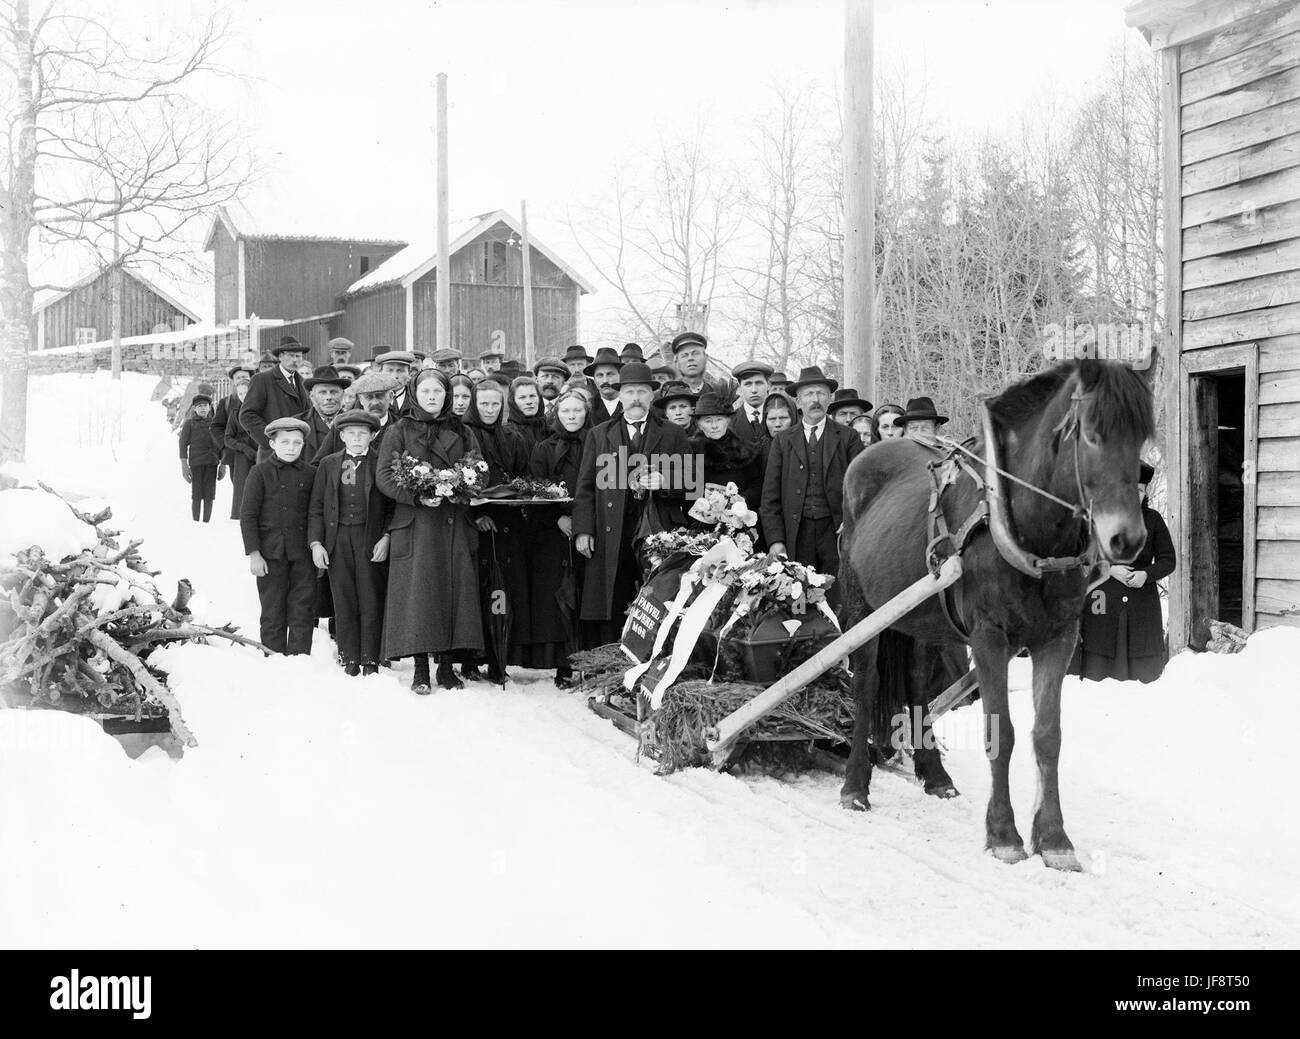 Funeral procession at Teigen, Førde, ca 1915-1920 33528870416 o Stock Photo